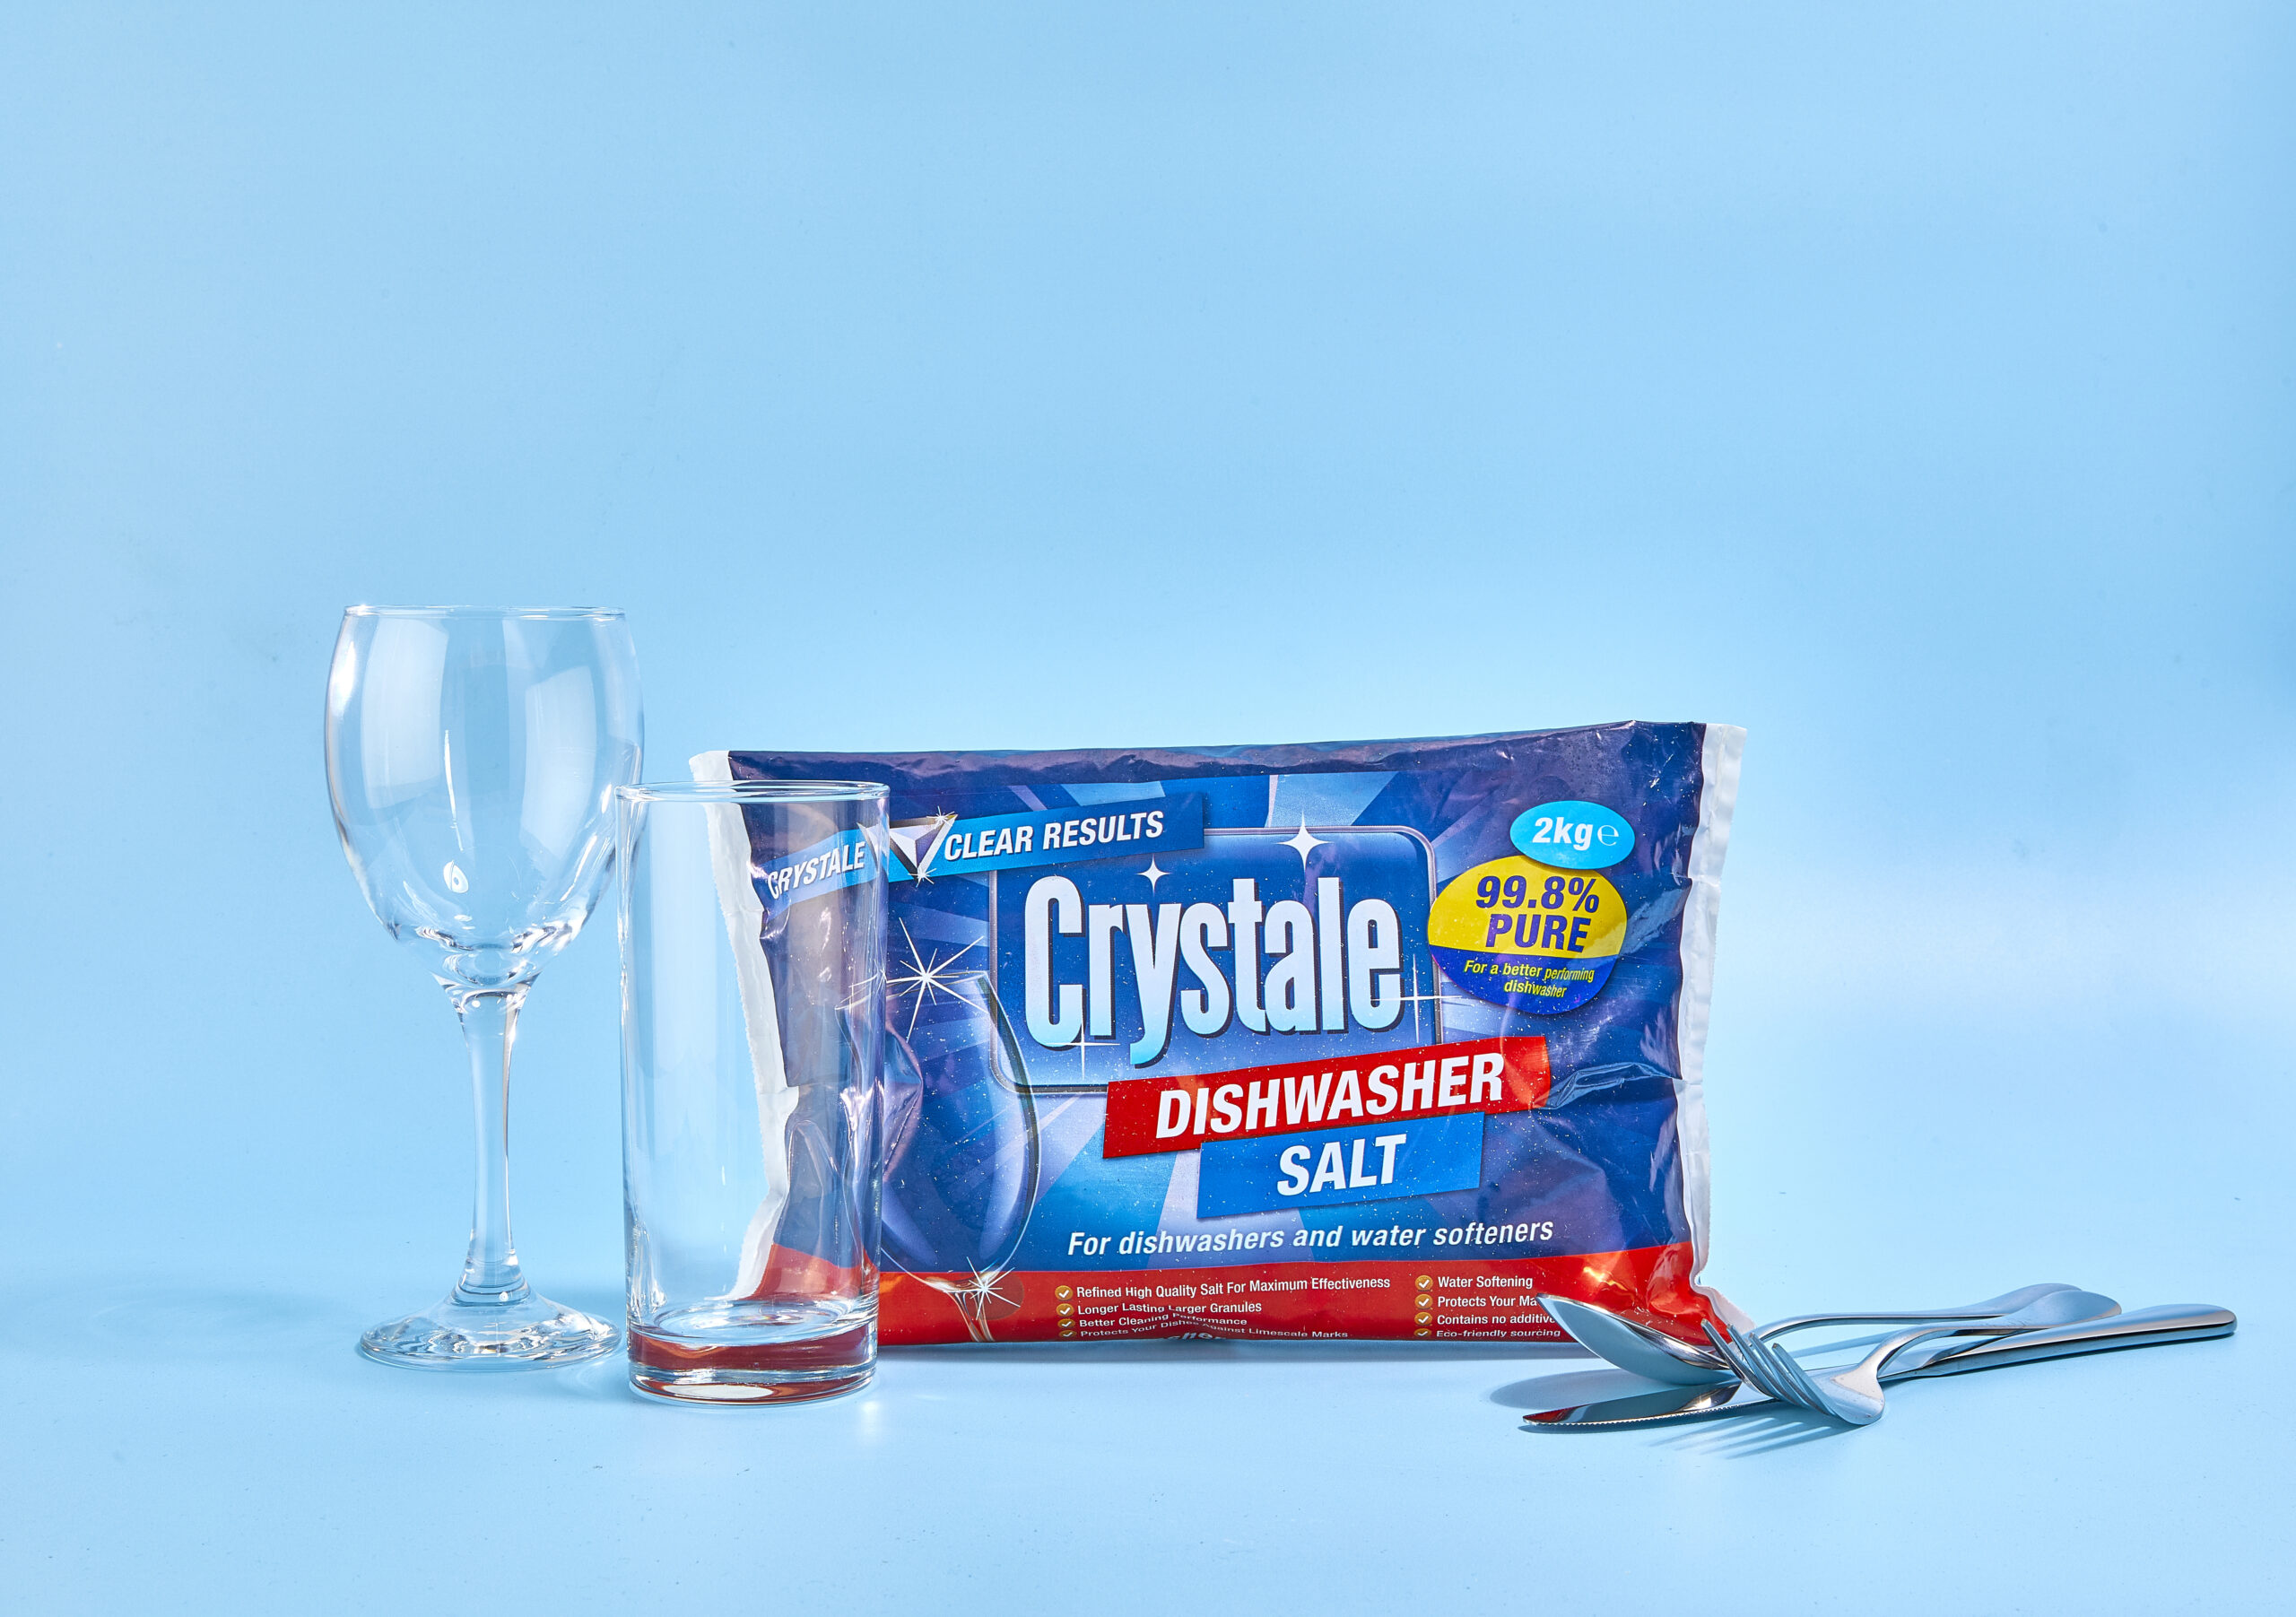 Crystale Dishwasher Salt Bag - Crystale in-wash Dishwasher Cleaner